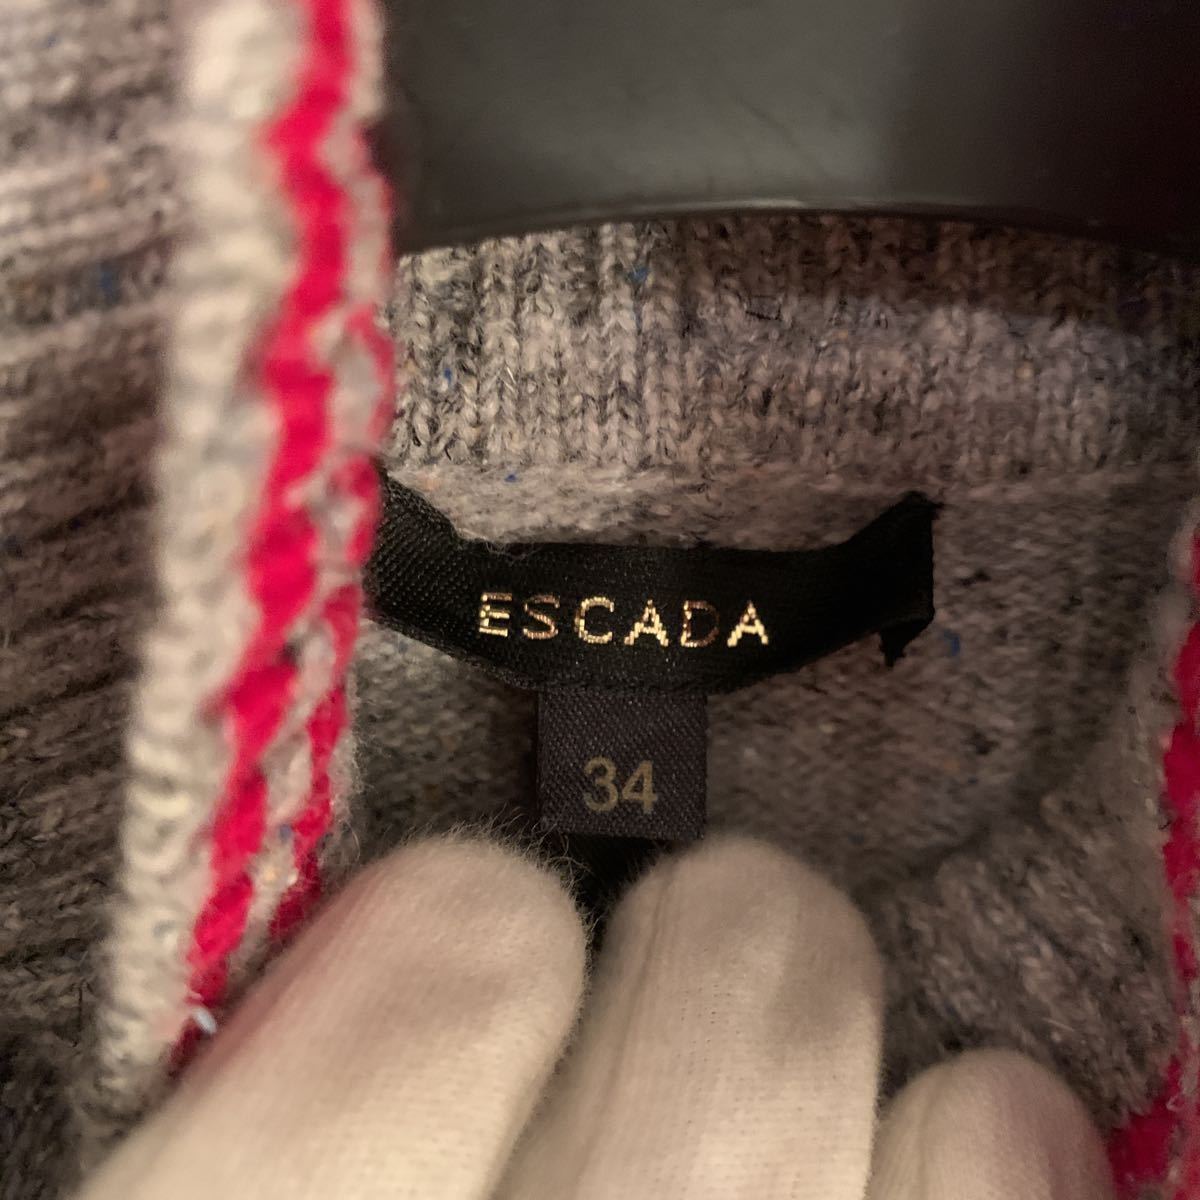  Escada ESCADA роскошный . роза рисунок ансамбль 36&34 бисер вышивка 